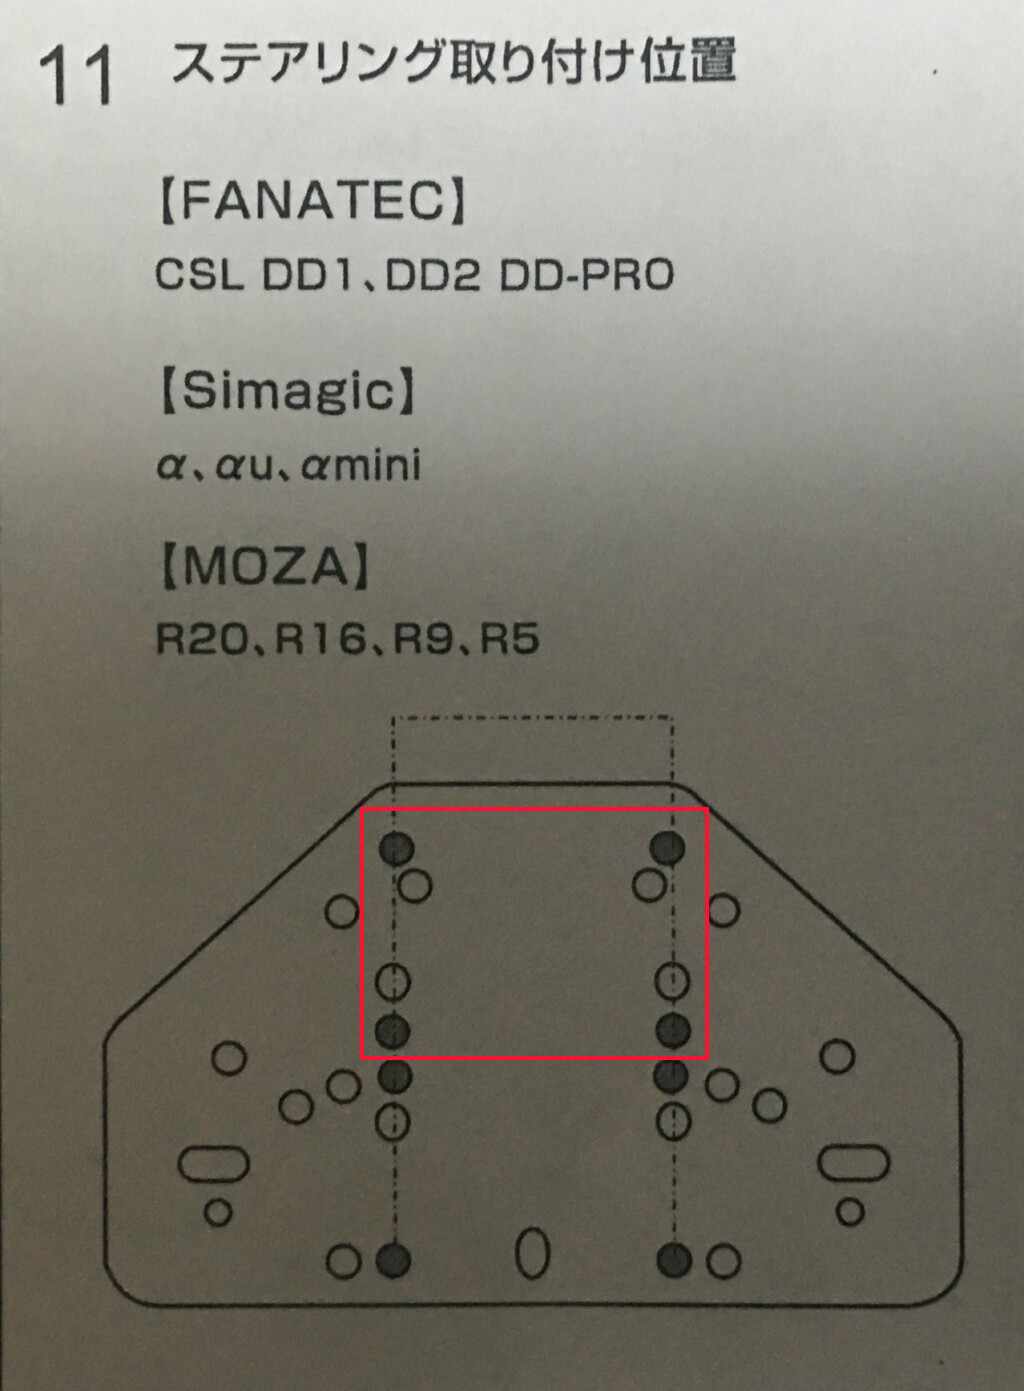 MOZA R9の場合は、ワッシャーを8個使用しないとボルトを最後までしっかり締めることができずグラグラになってしまう